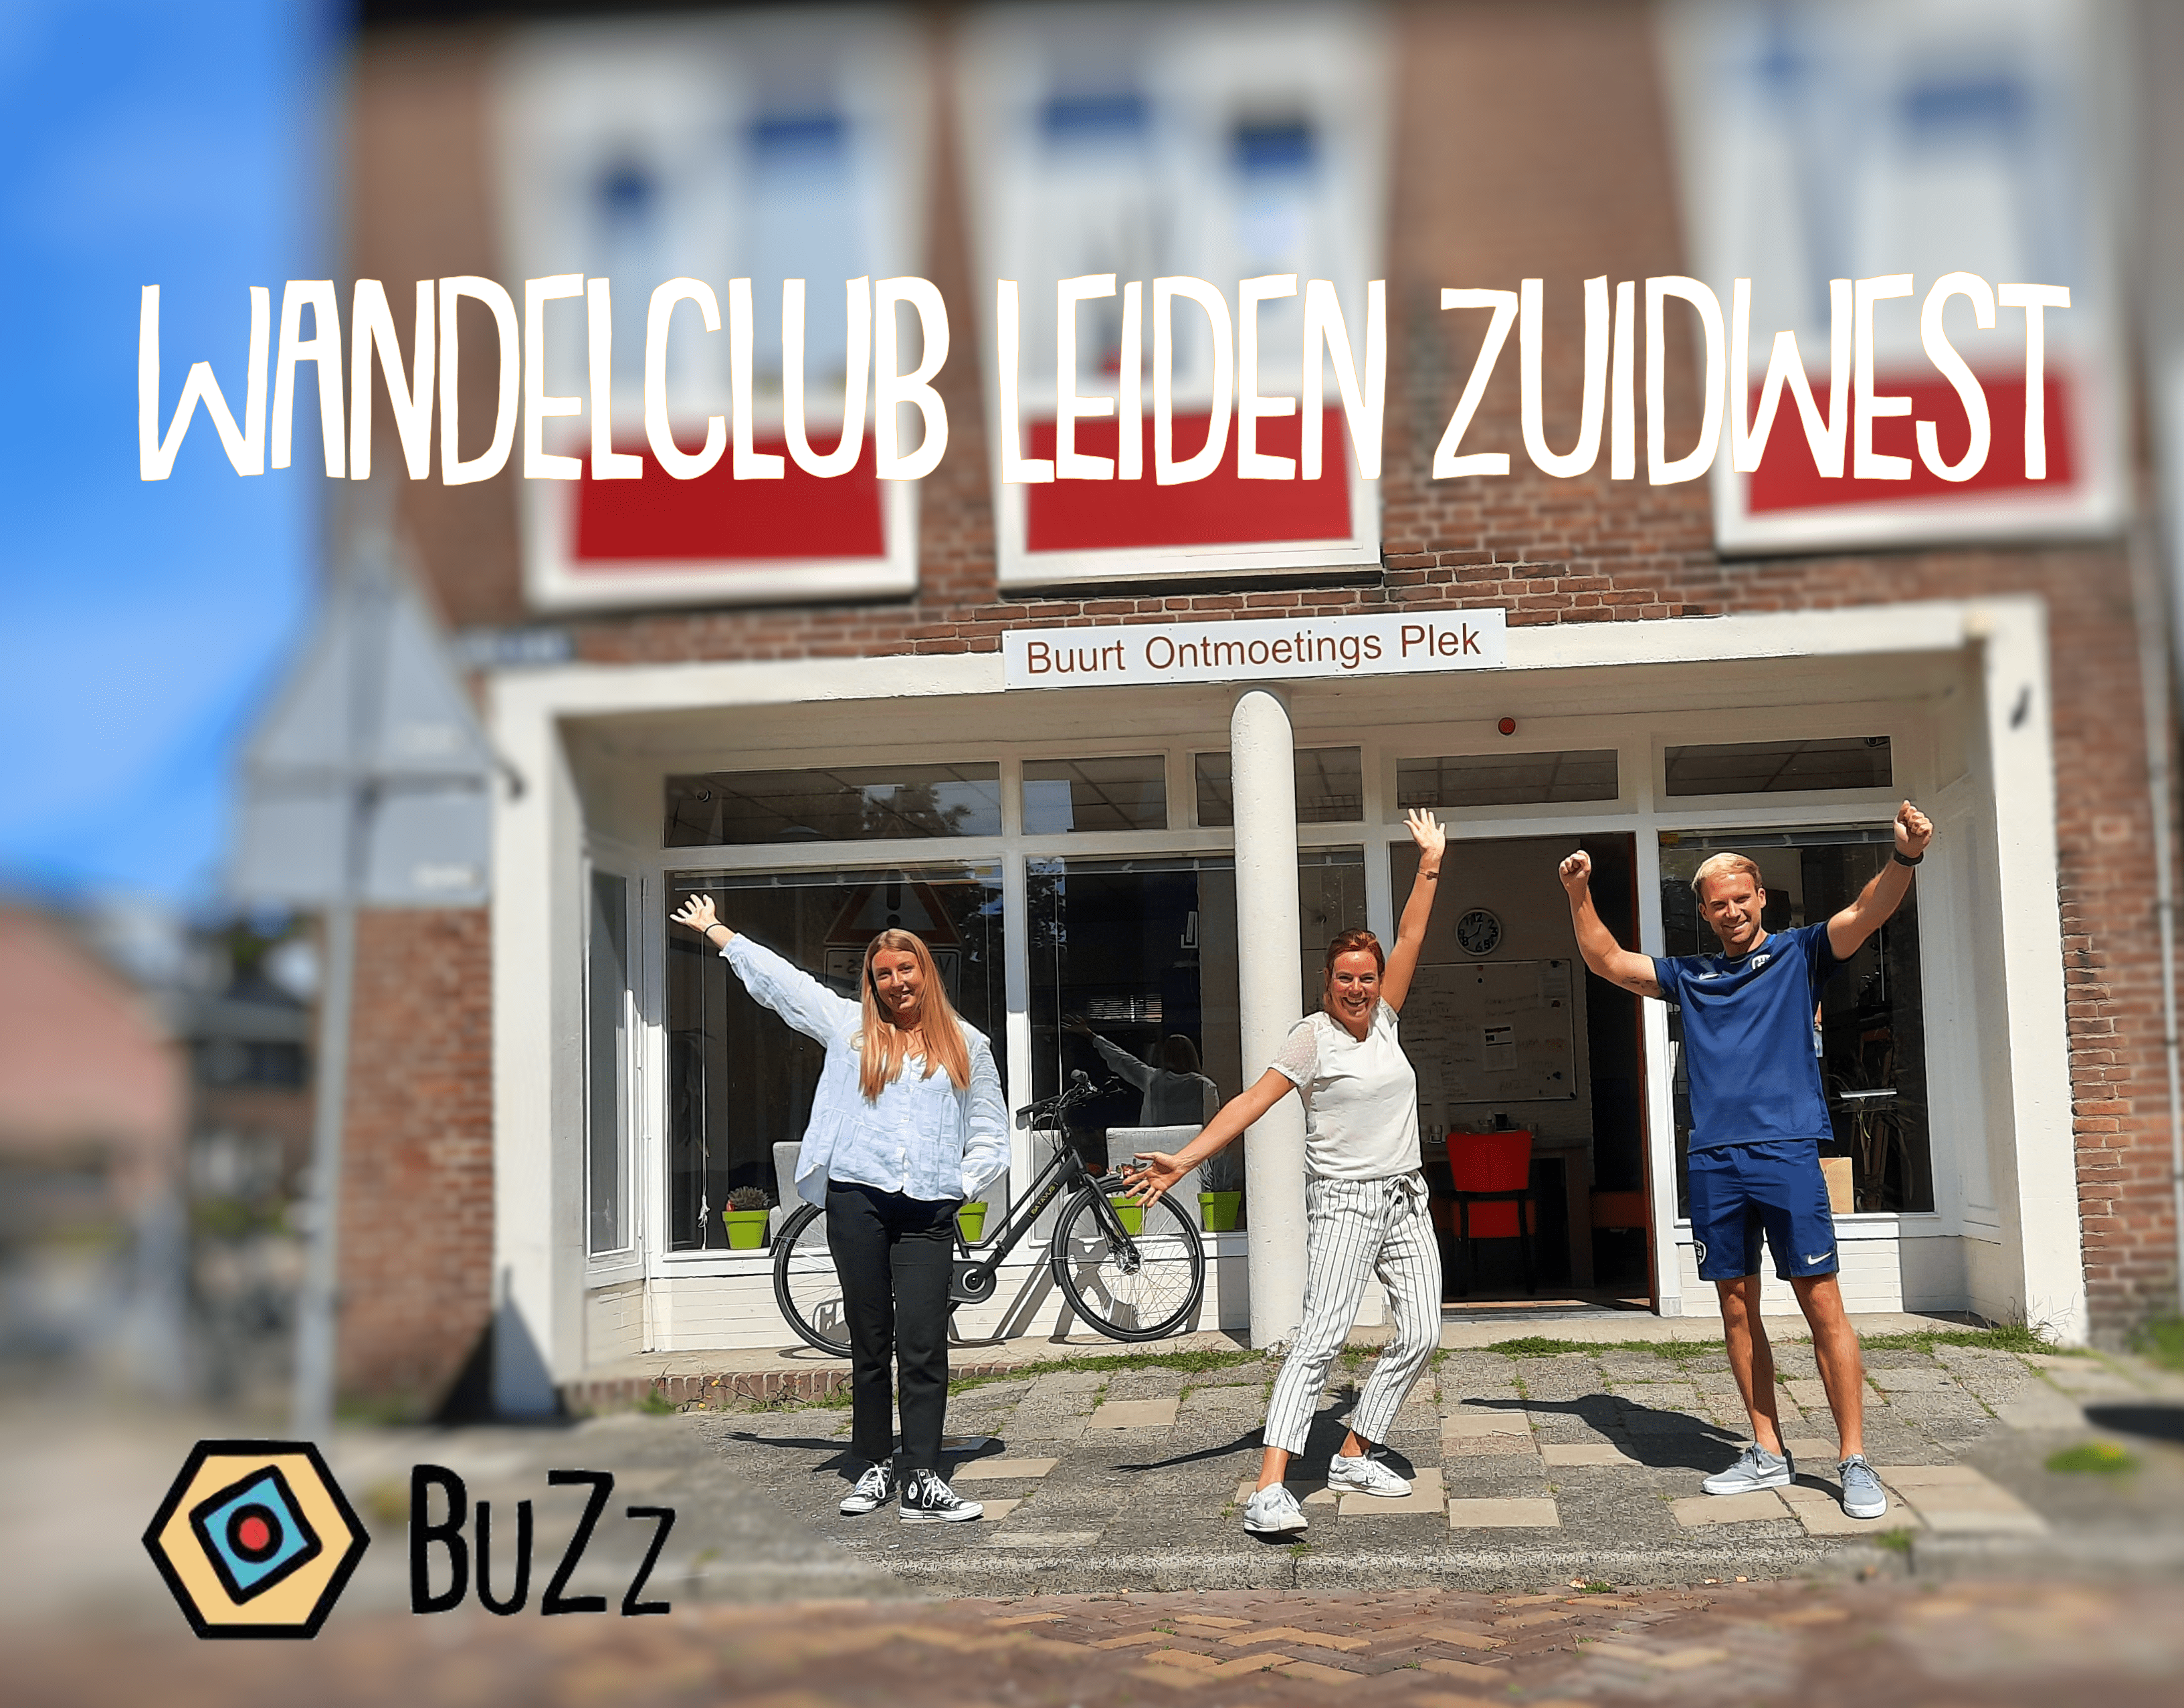 Wandelclub in Leiden Zuidwest